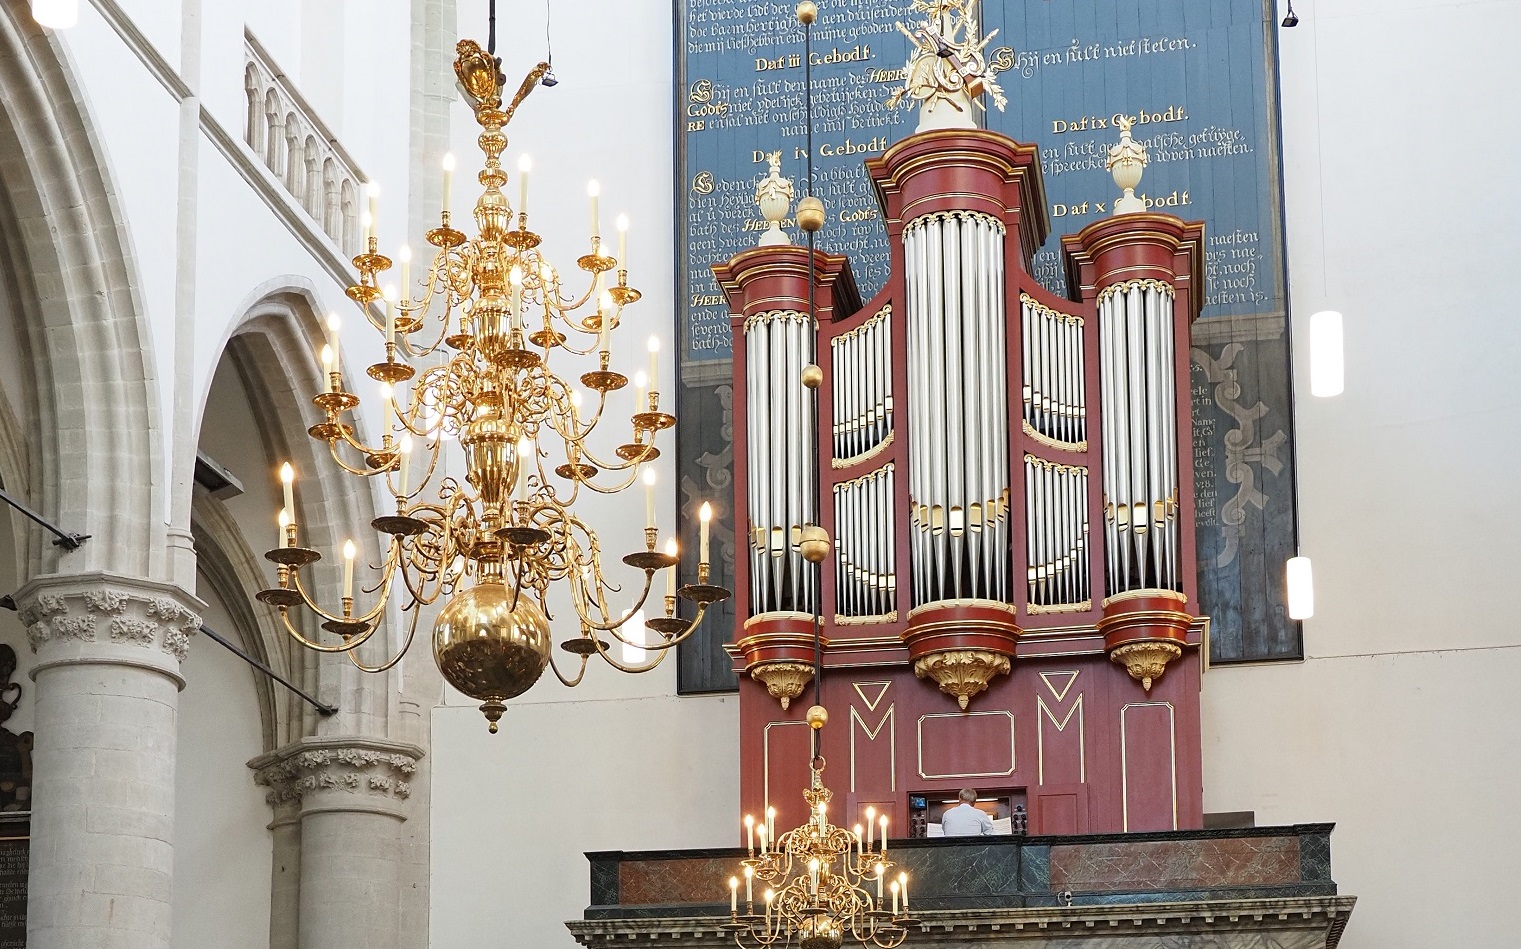 Het (Kam-)orgel en kerkmuziek in de kerk